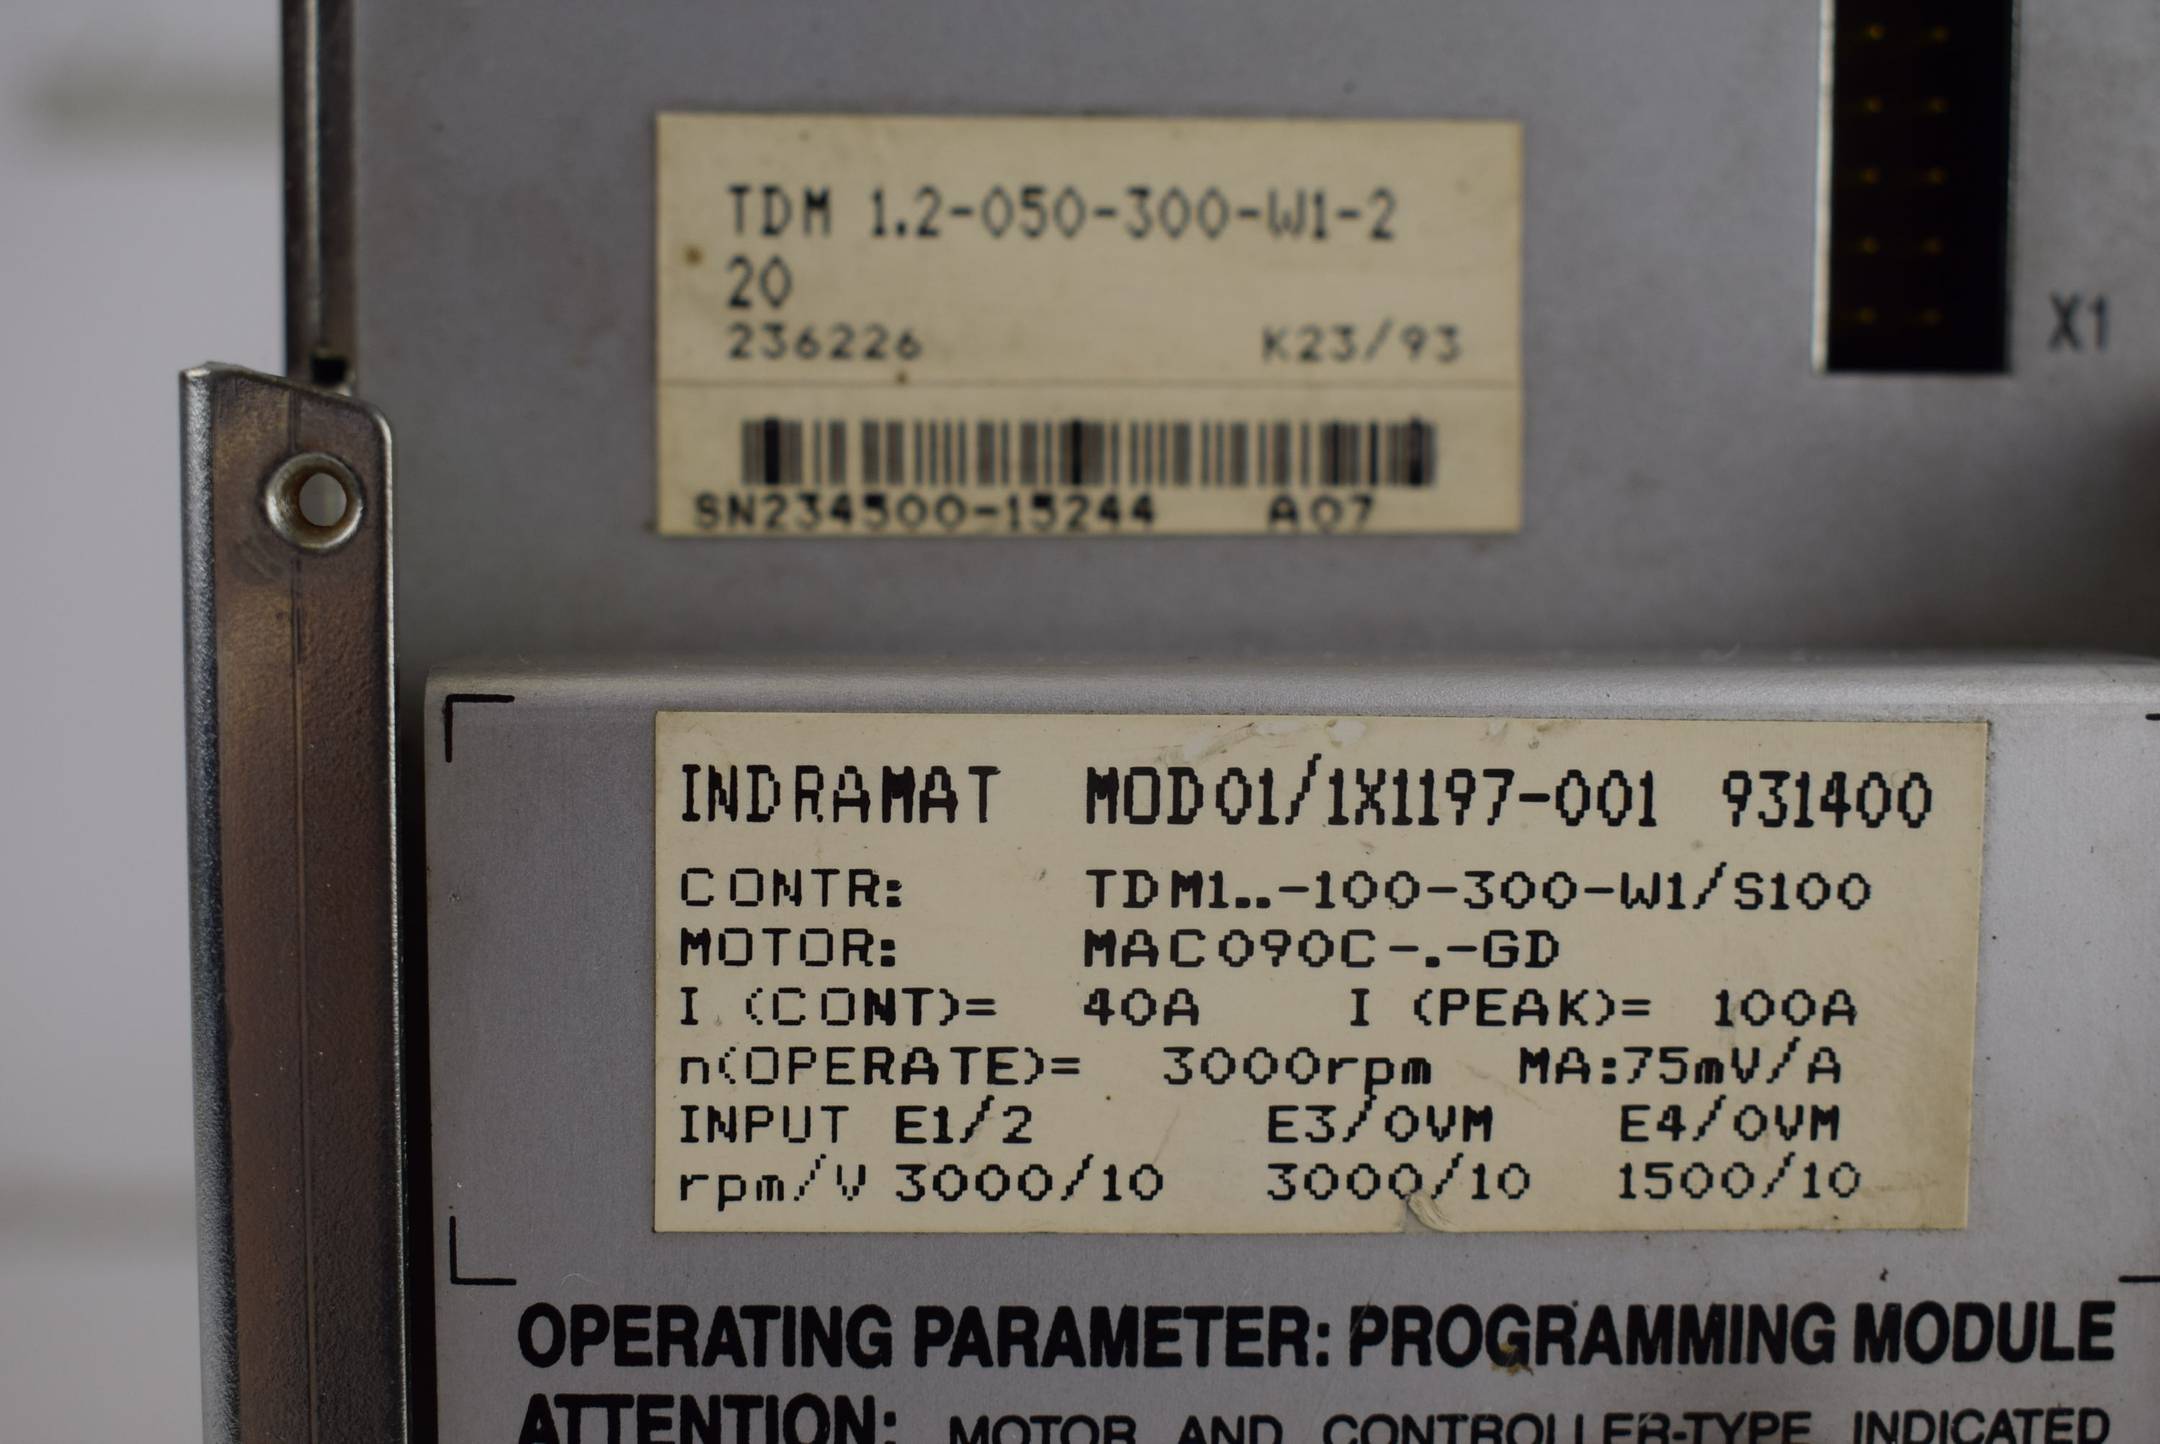 Indramat A.C. Servo Controller TDM 1.2-050-300-W1-220 + MOD01/1X1197-001